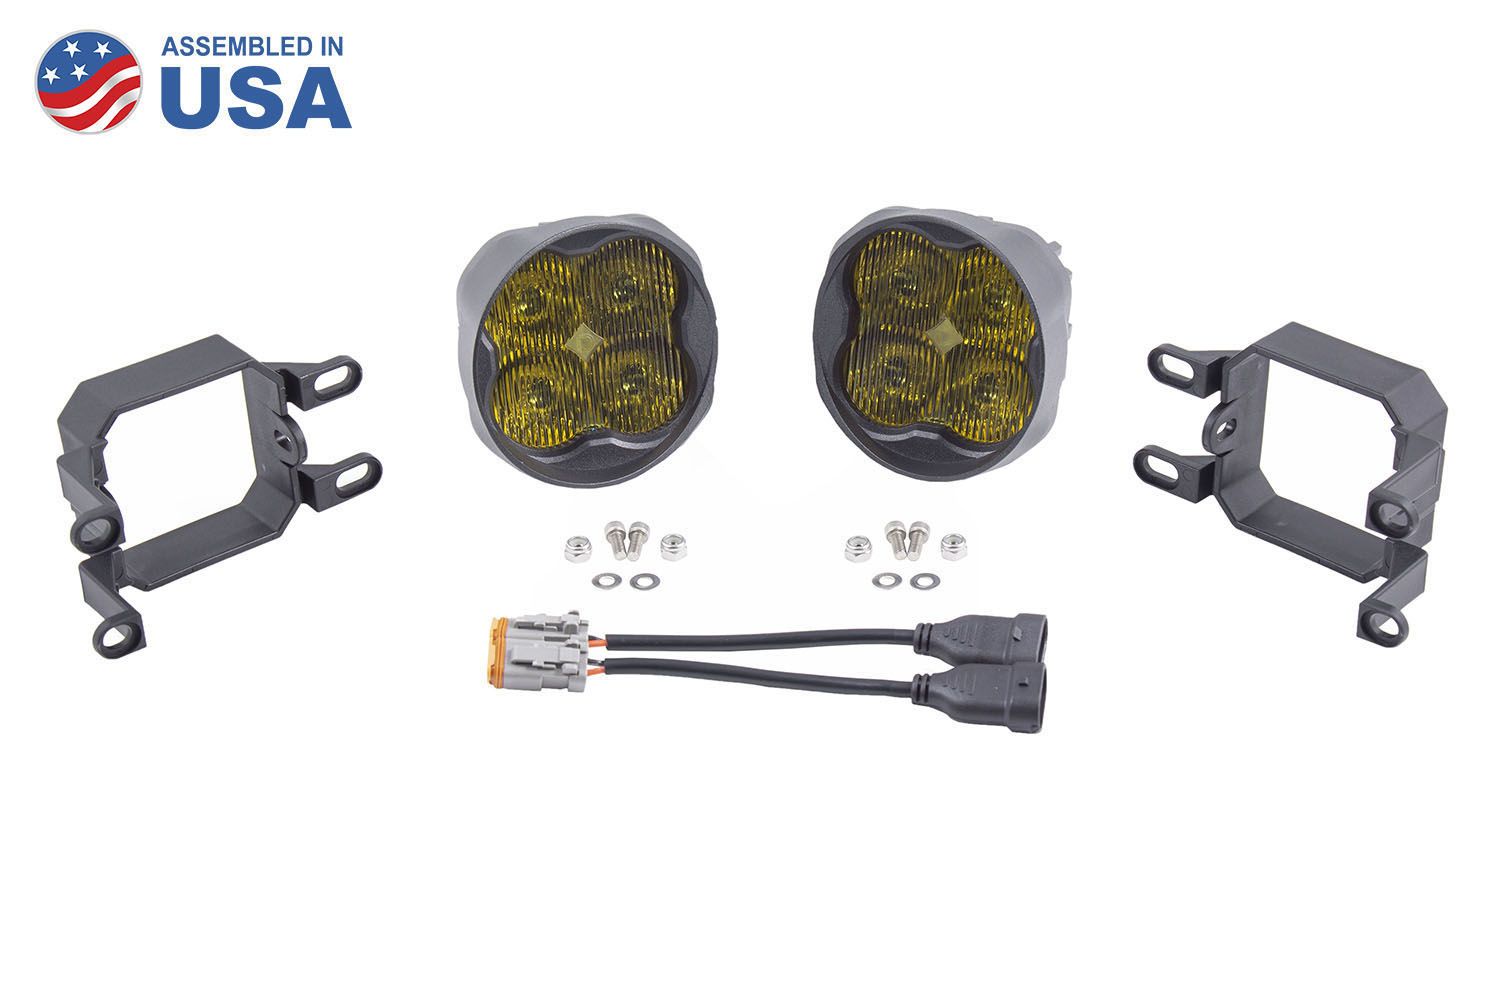 SS3 LED Fog Light Kit for 2013-2015 Lexus GS350 Diode Dynamics-